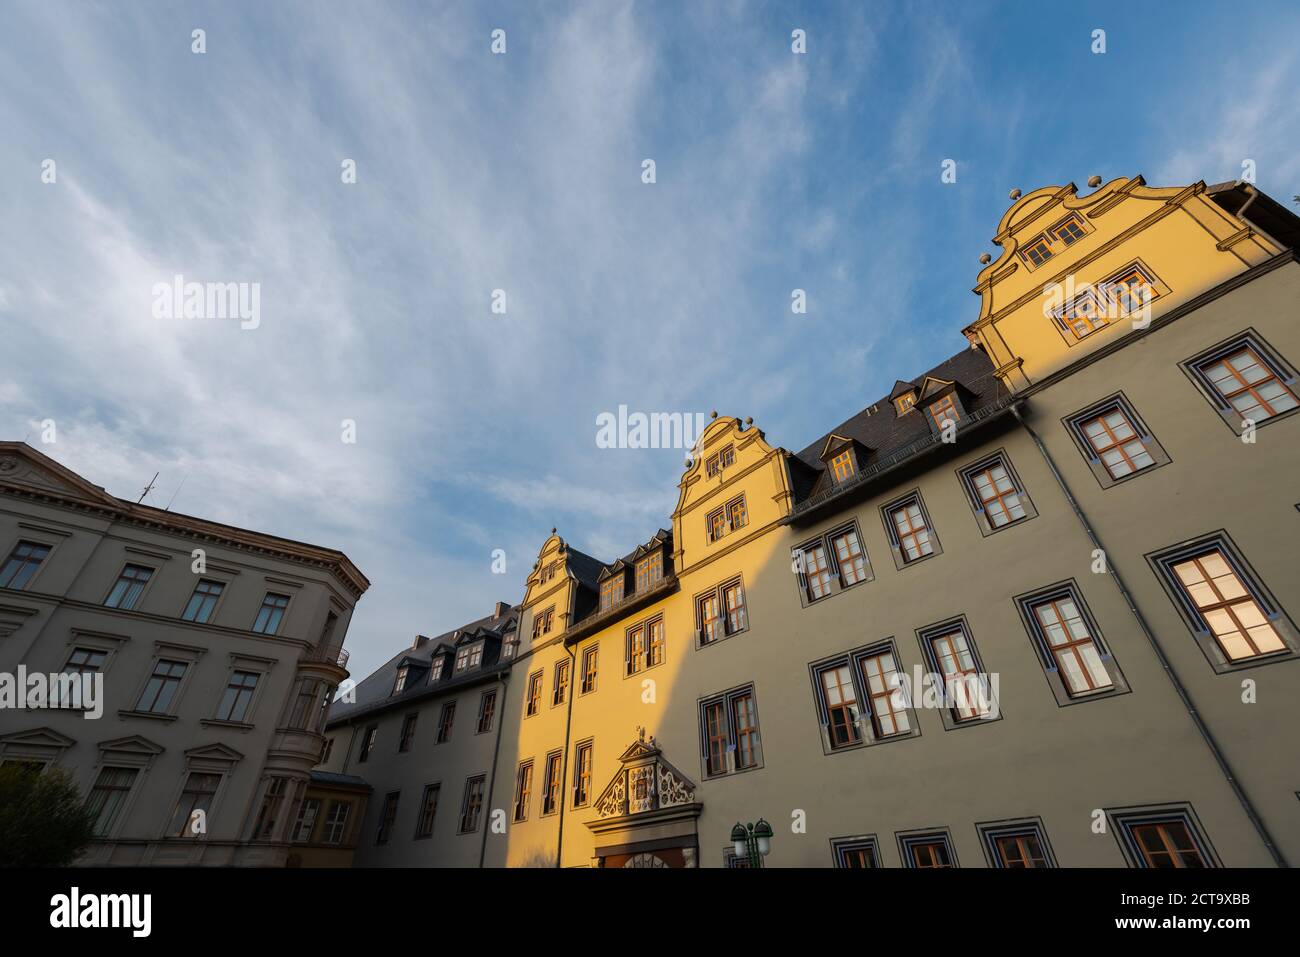 Historisches Gebäude in Weimar im goldenen Abendlicht Stock Photo